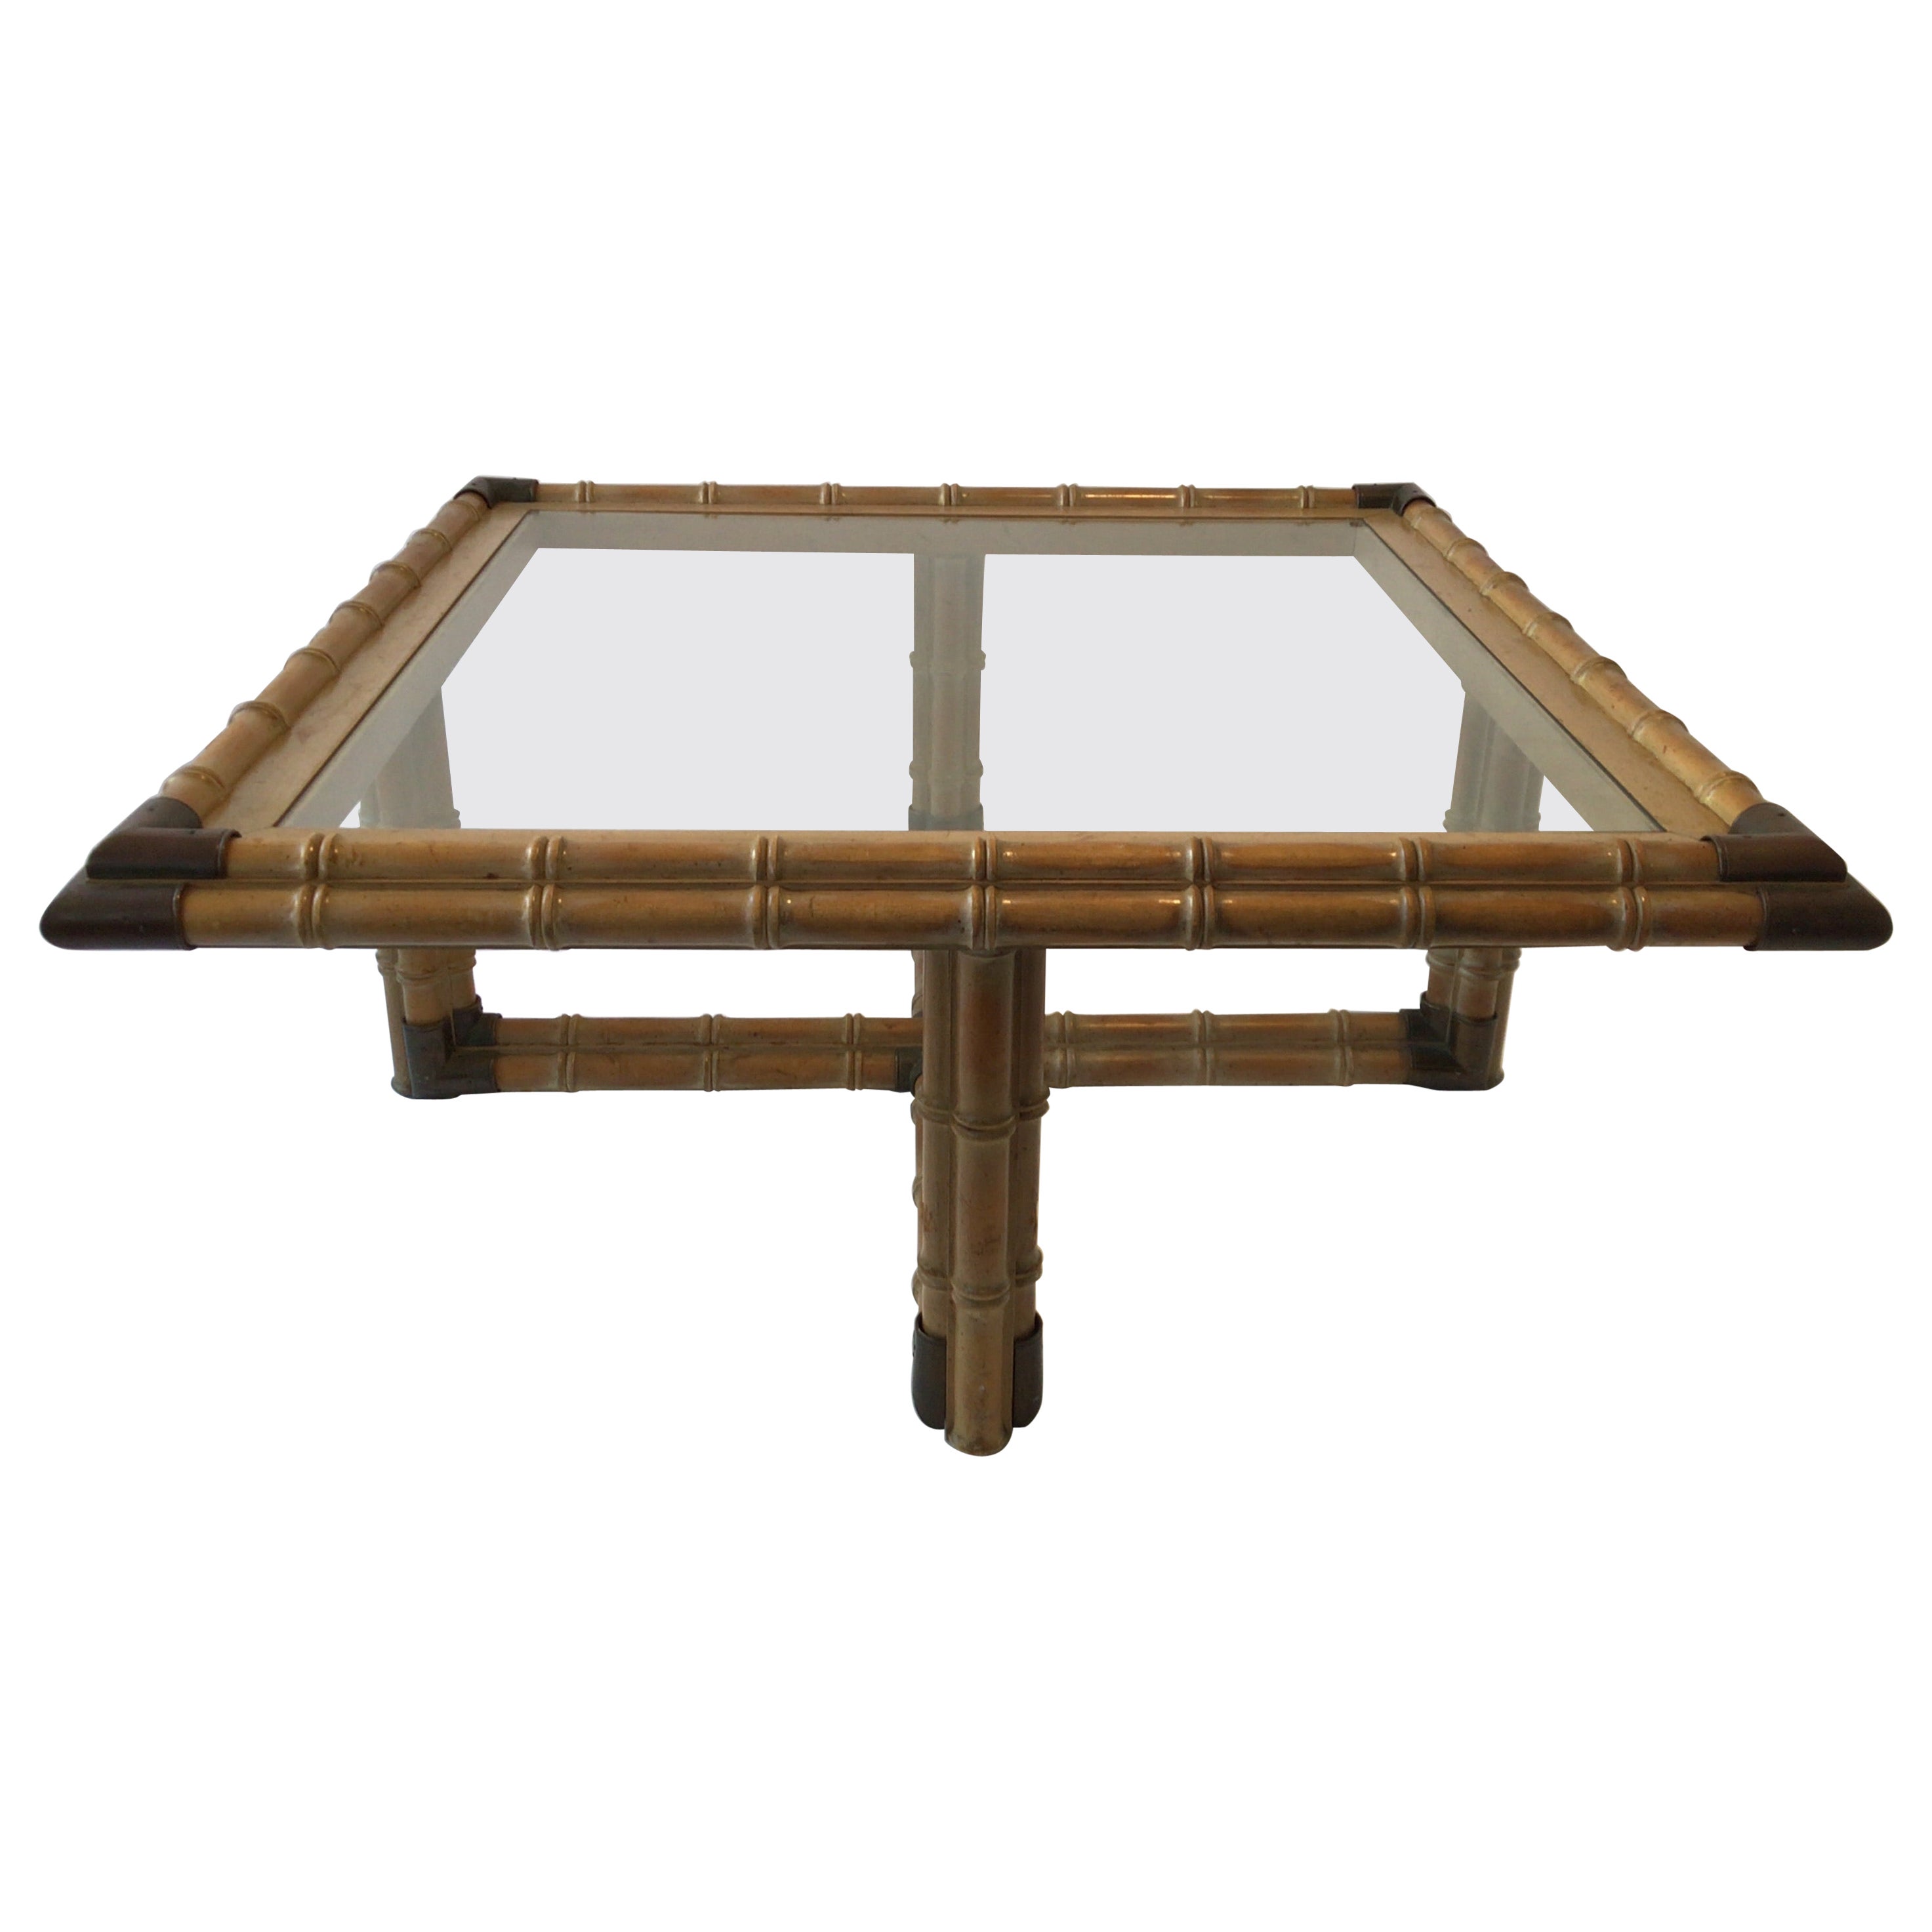 Table basse carrée en bois de faux bambou des années 1960 avec accents en laiton et dessus en verre